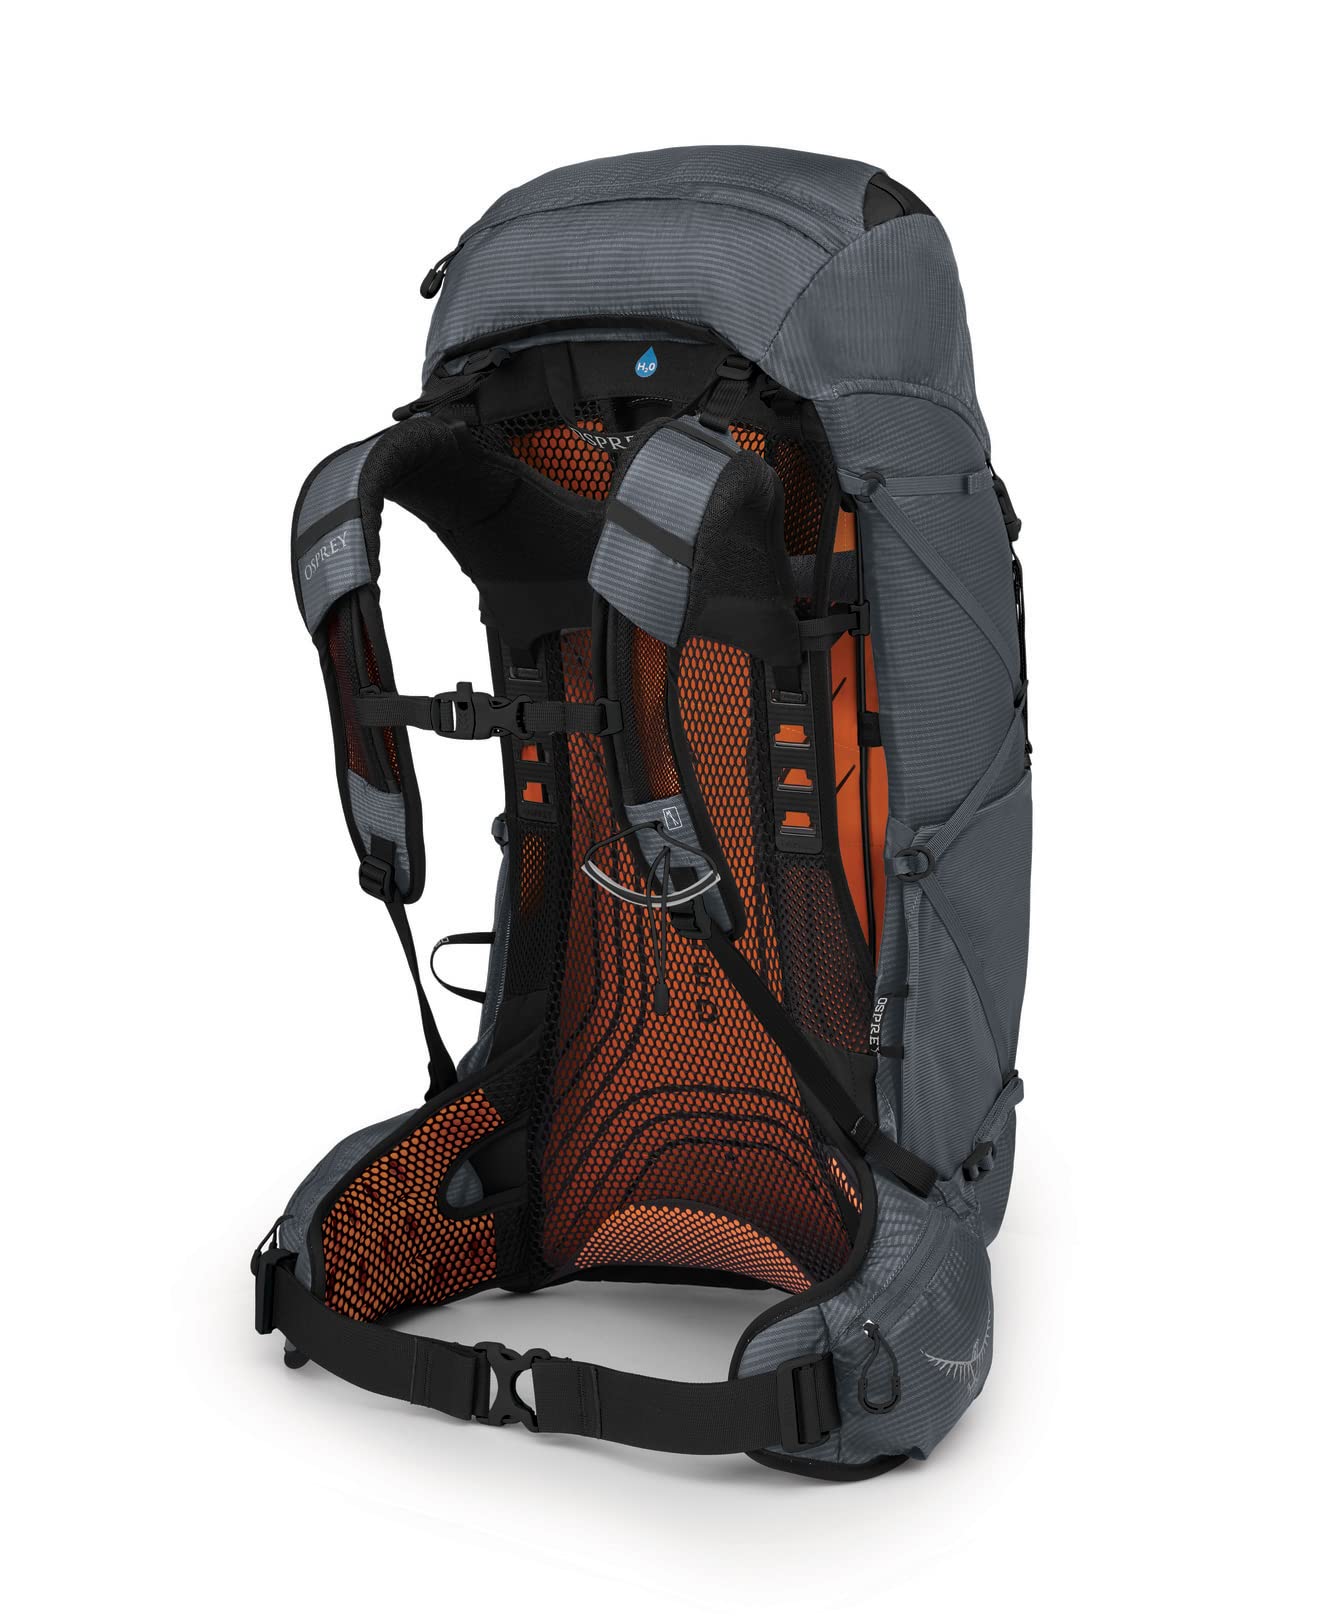 Osprey Exos 38 Men's Ultralight Backpacking Backpack